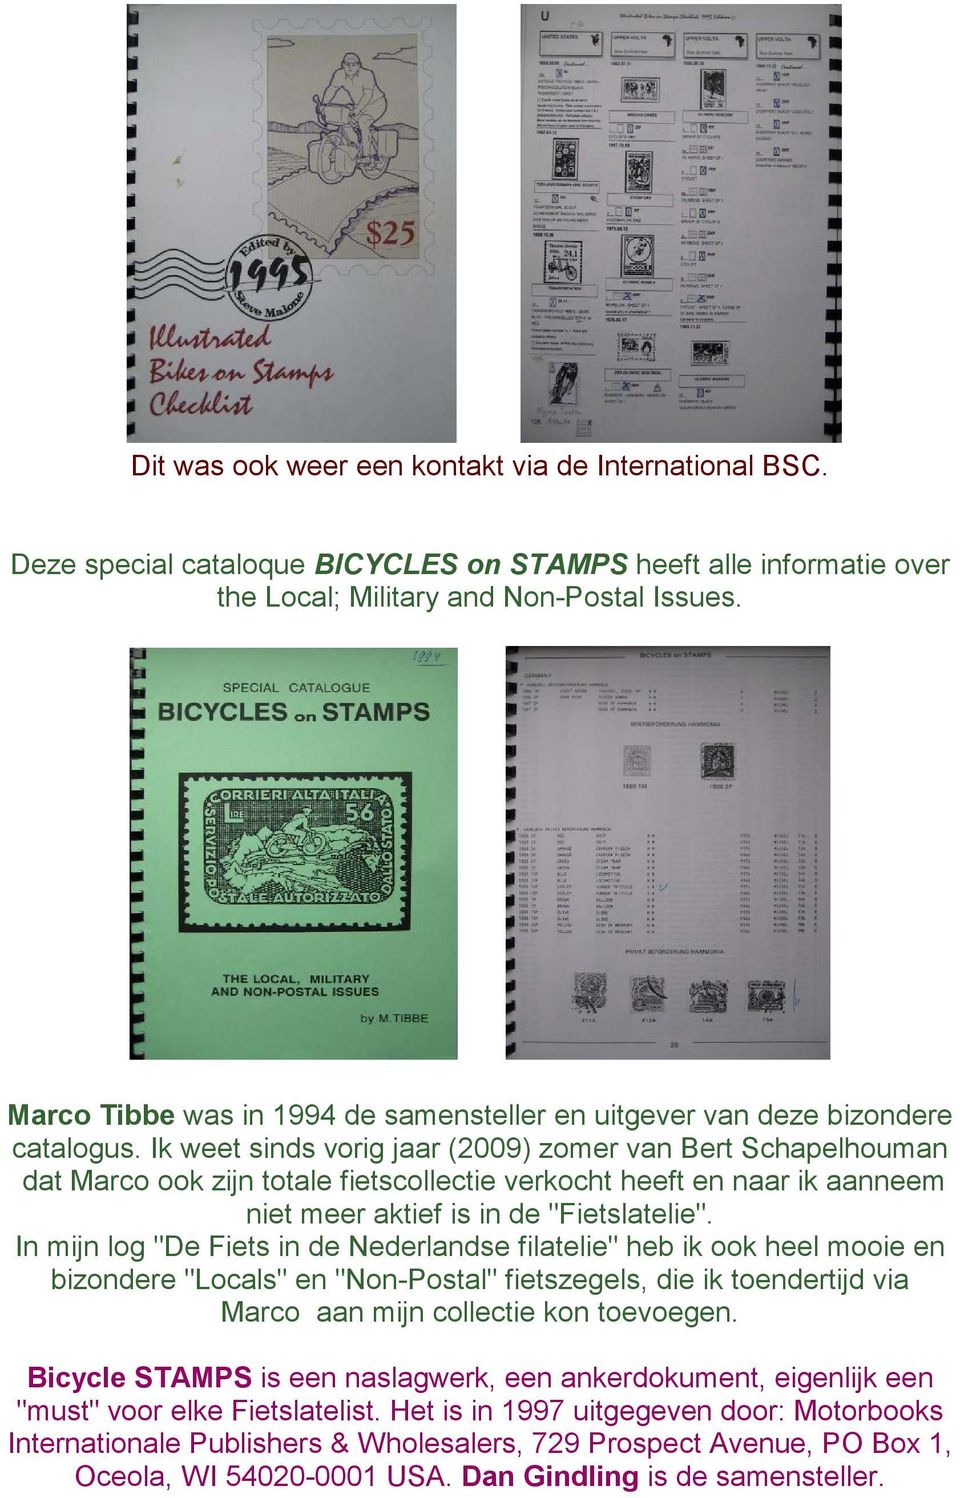 Ik weet sinds vorig jaar (2009) zomer van Bert Schapelhouman dat Marco ook zijn totale fietscollectie verkocht heeft en naar ik aanneem niet meer aktief is in de "Fietslatelie".